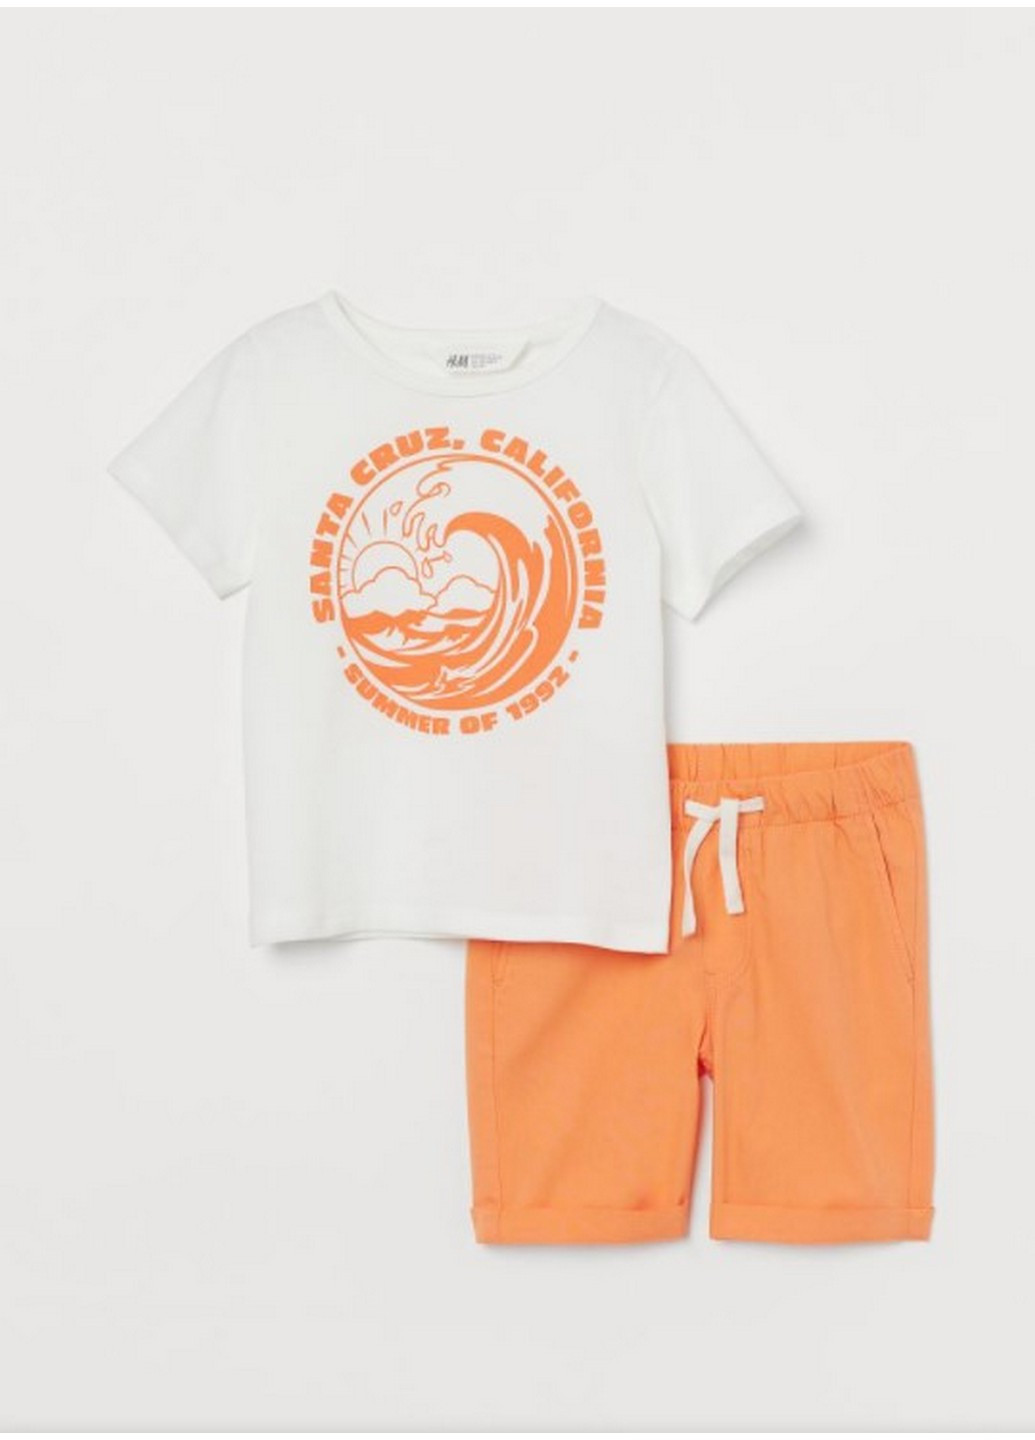 Оранжевый комплект футболка и шорты на мальчика H&M